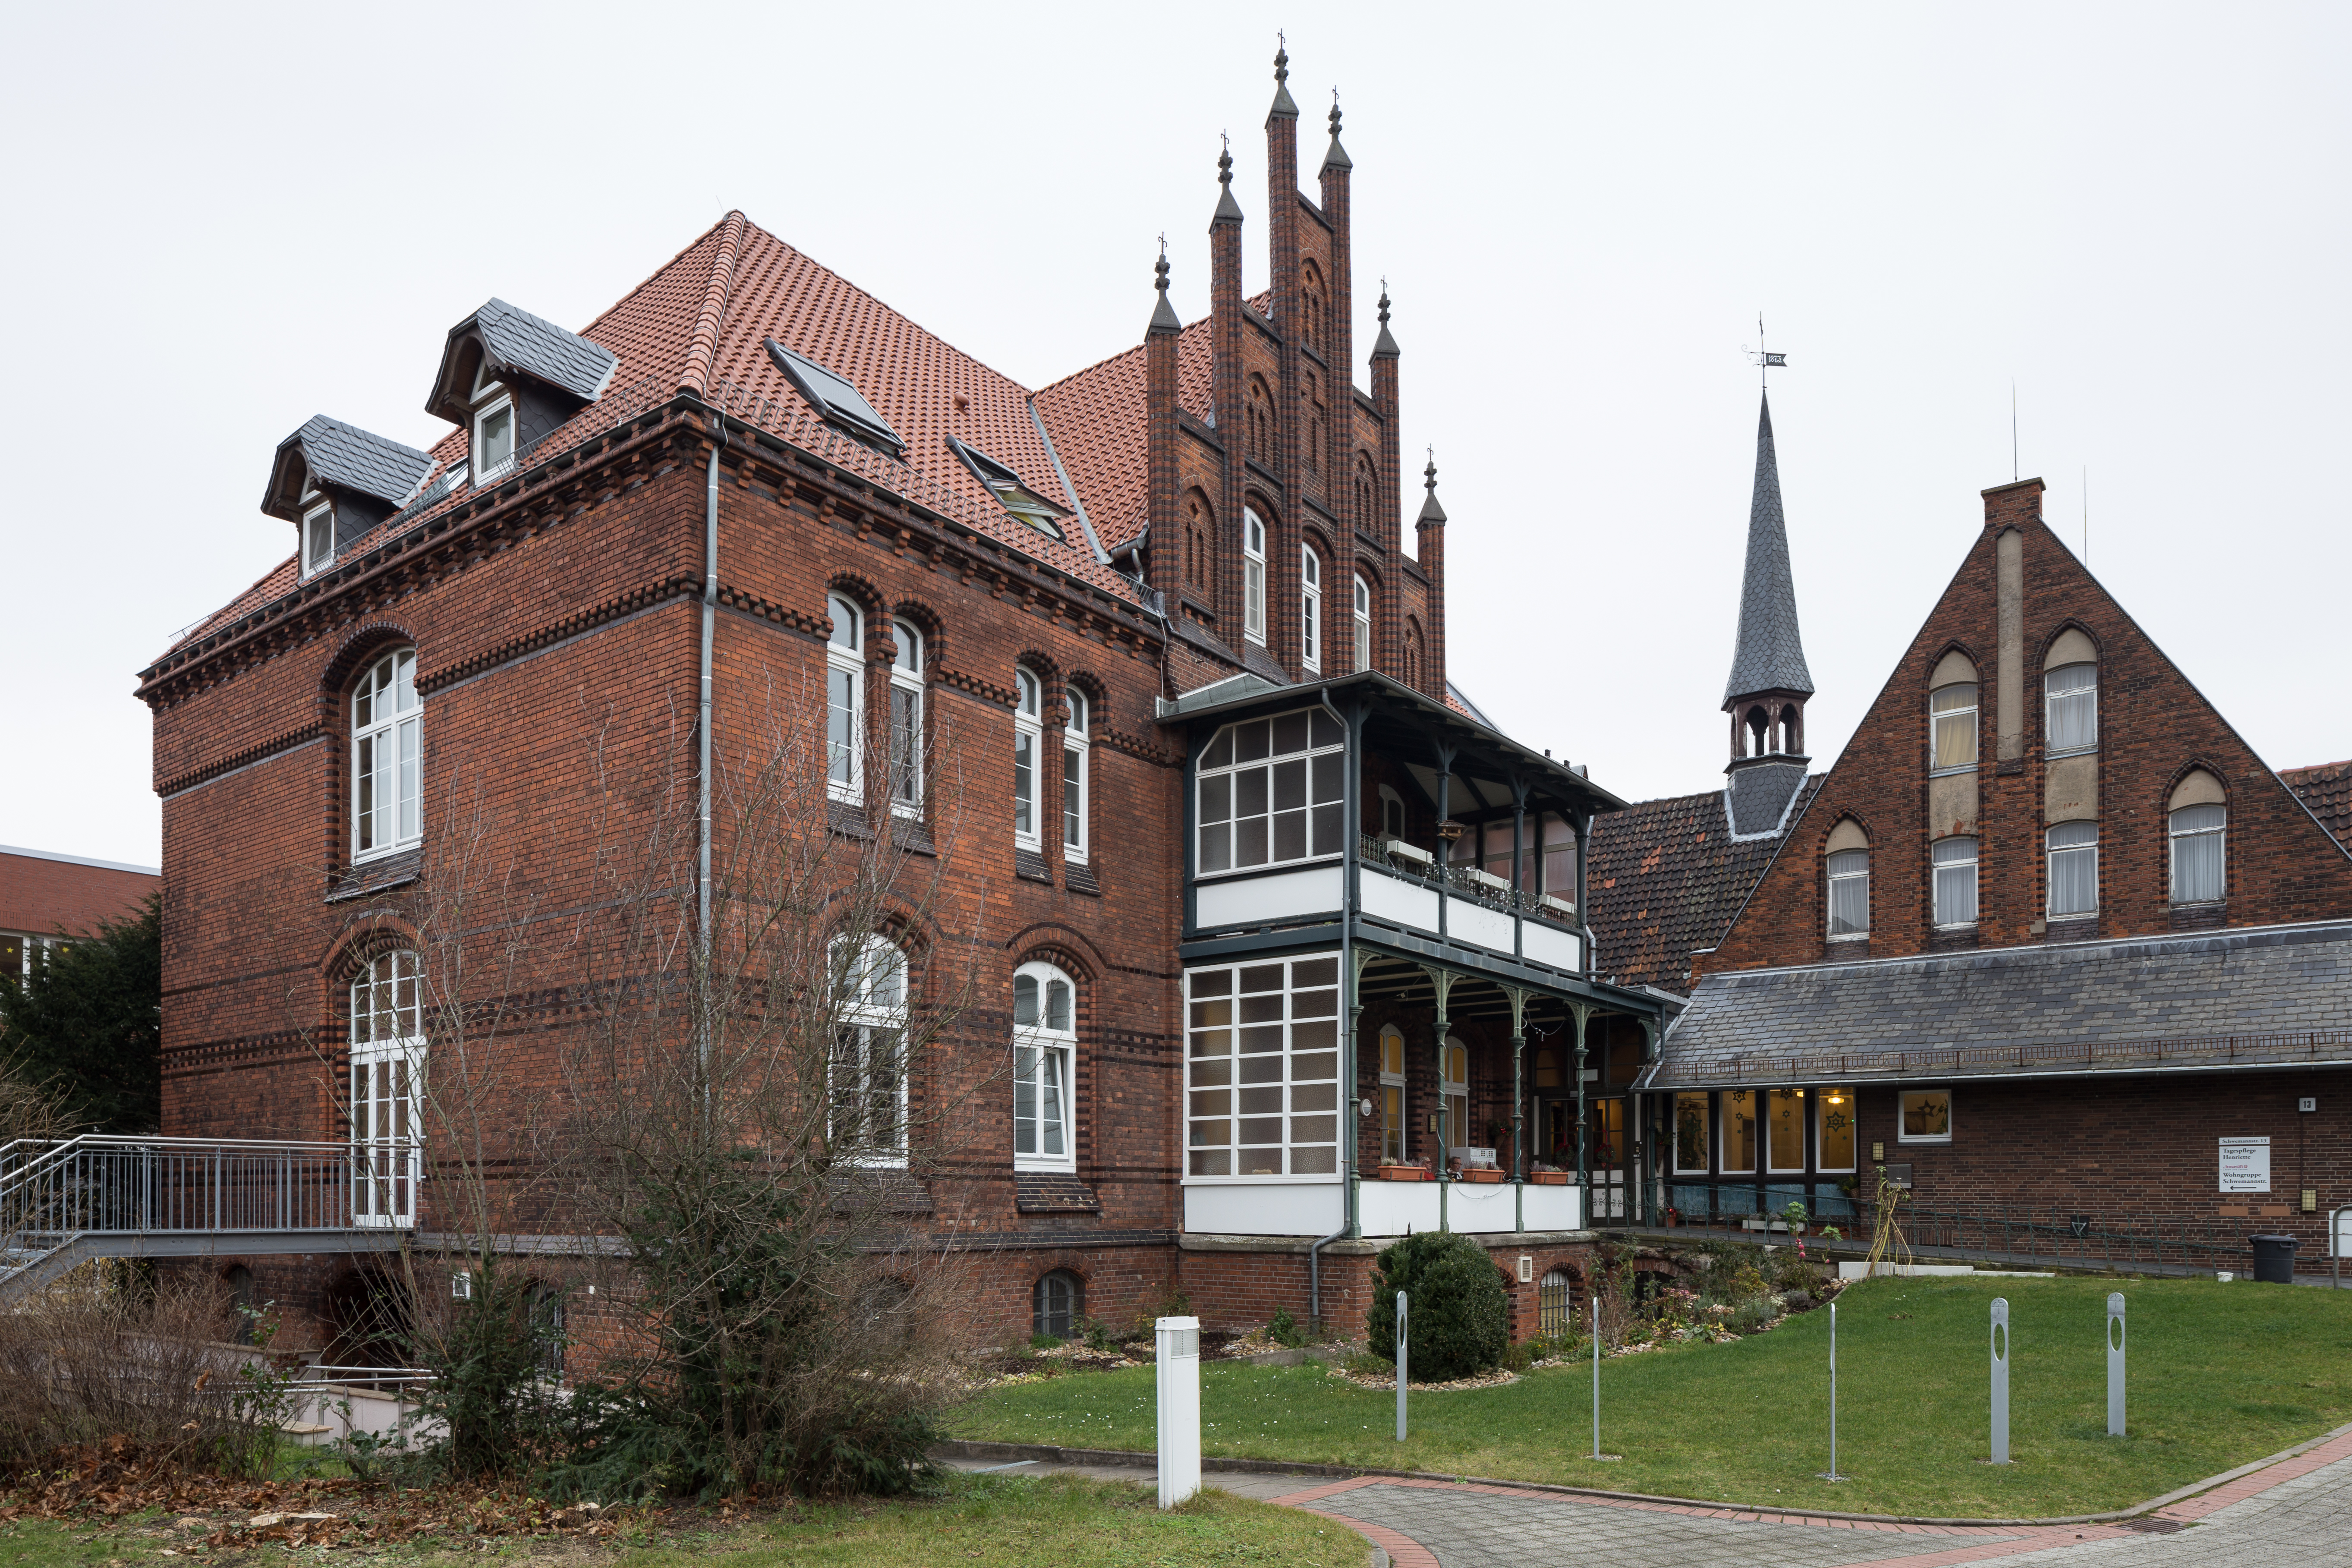 Alt-Bethesda, care home building located at Schwemannstrasse in Kirchrode quarter of Hannover, Germa...